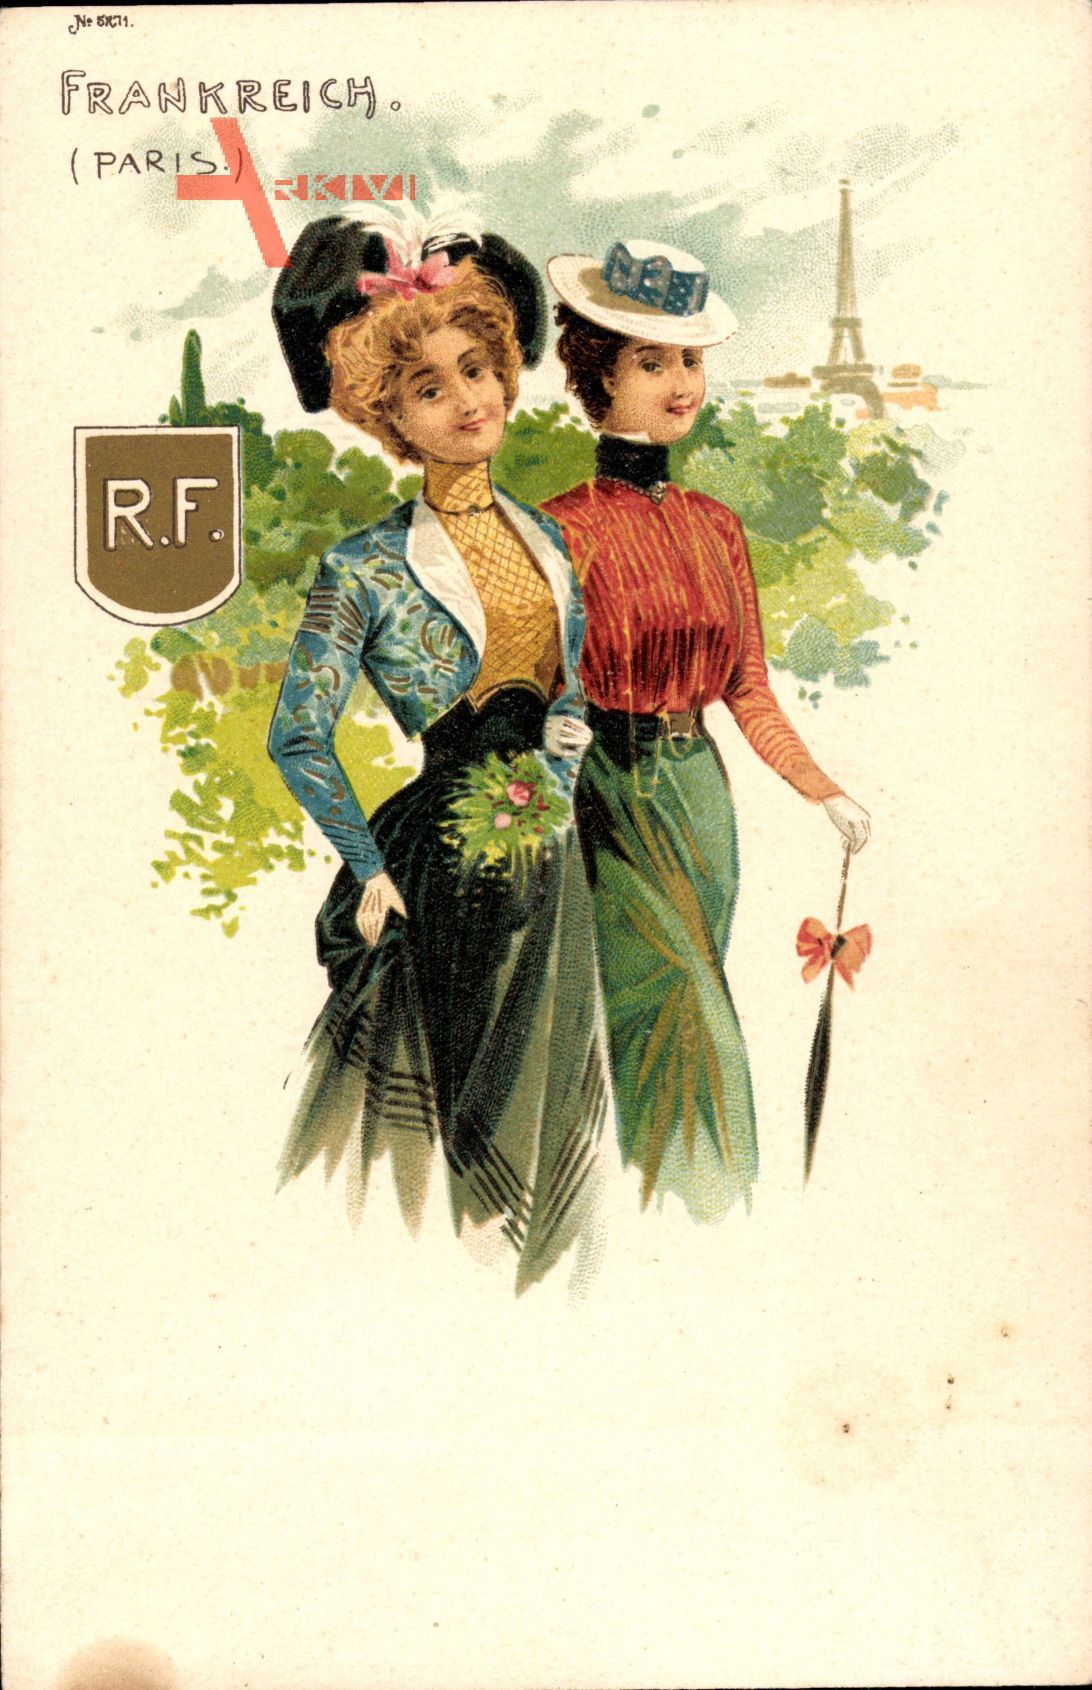 Paris Frankreich, Zwei junge Frauen in Pariser Tracht, Mode